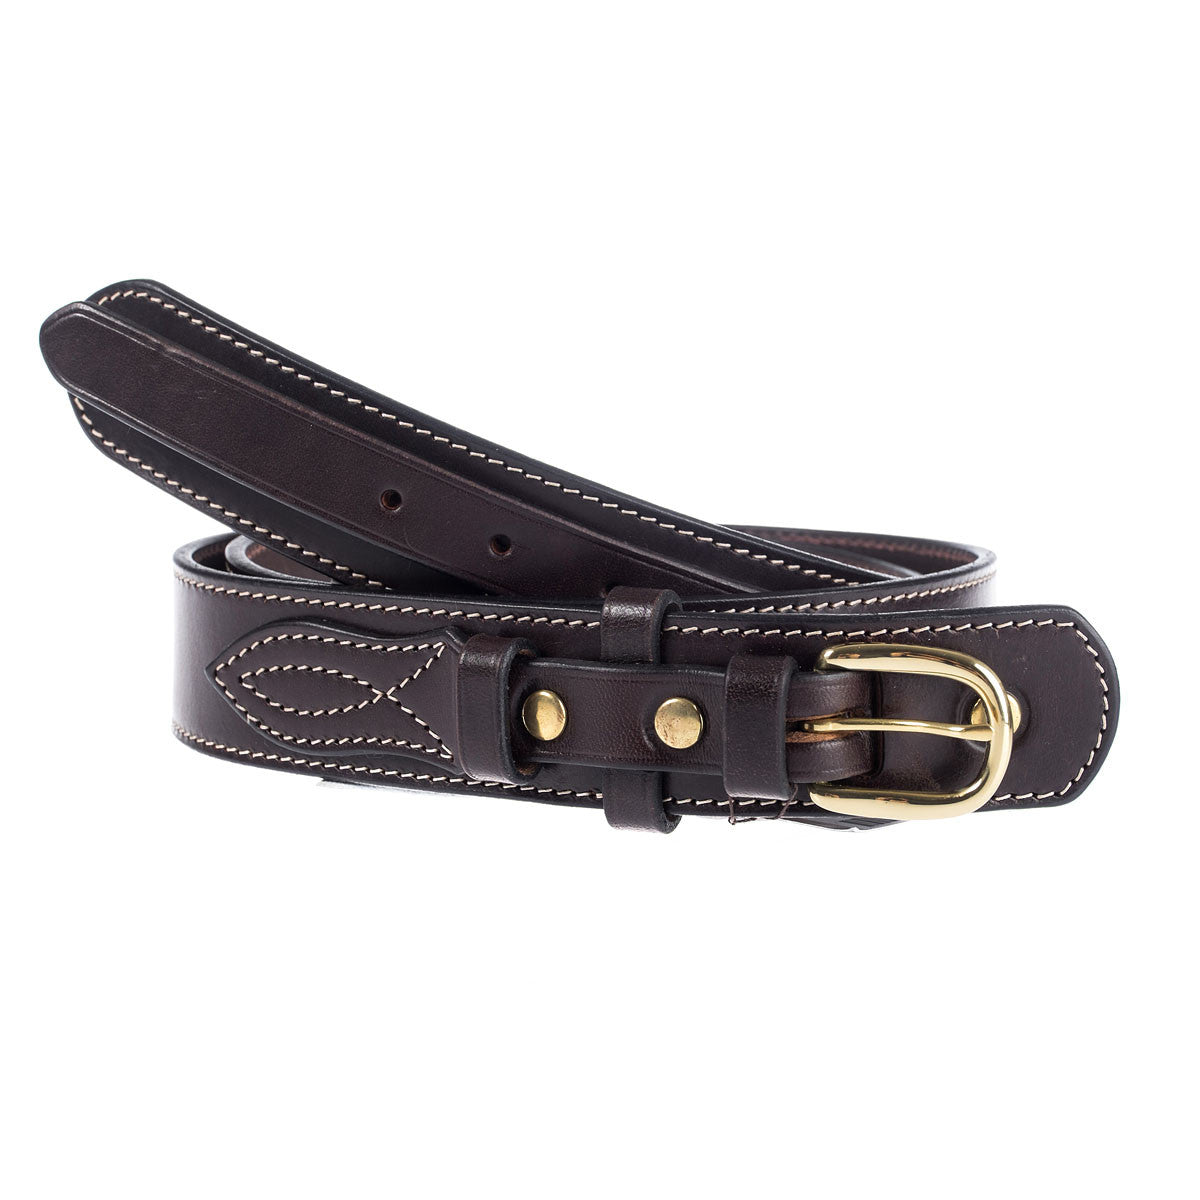 Ranger Belt - Aussie Bush Leather